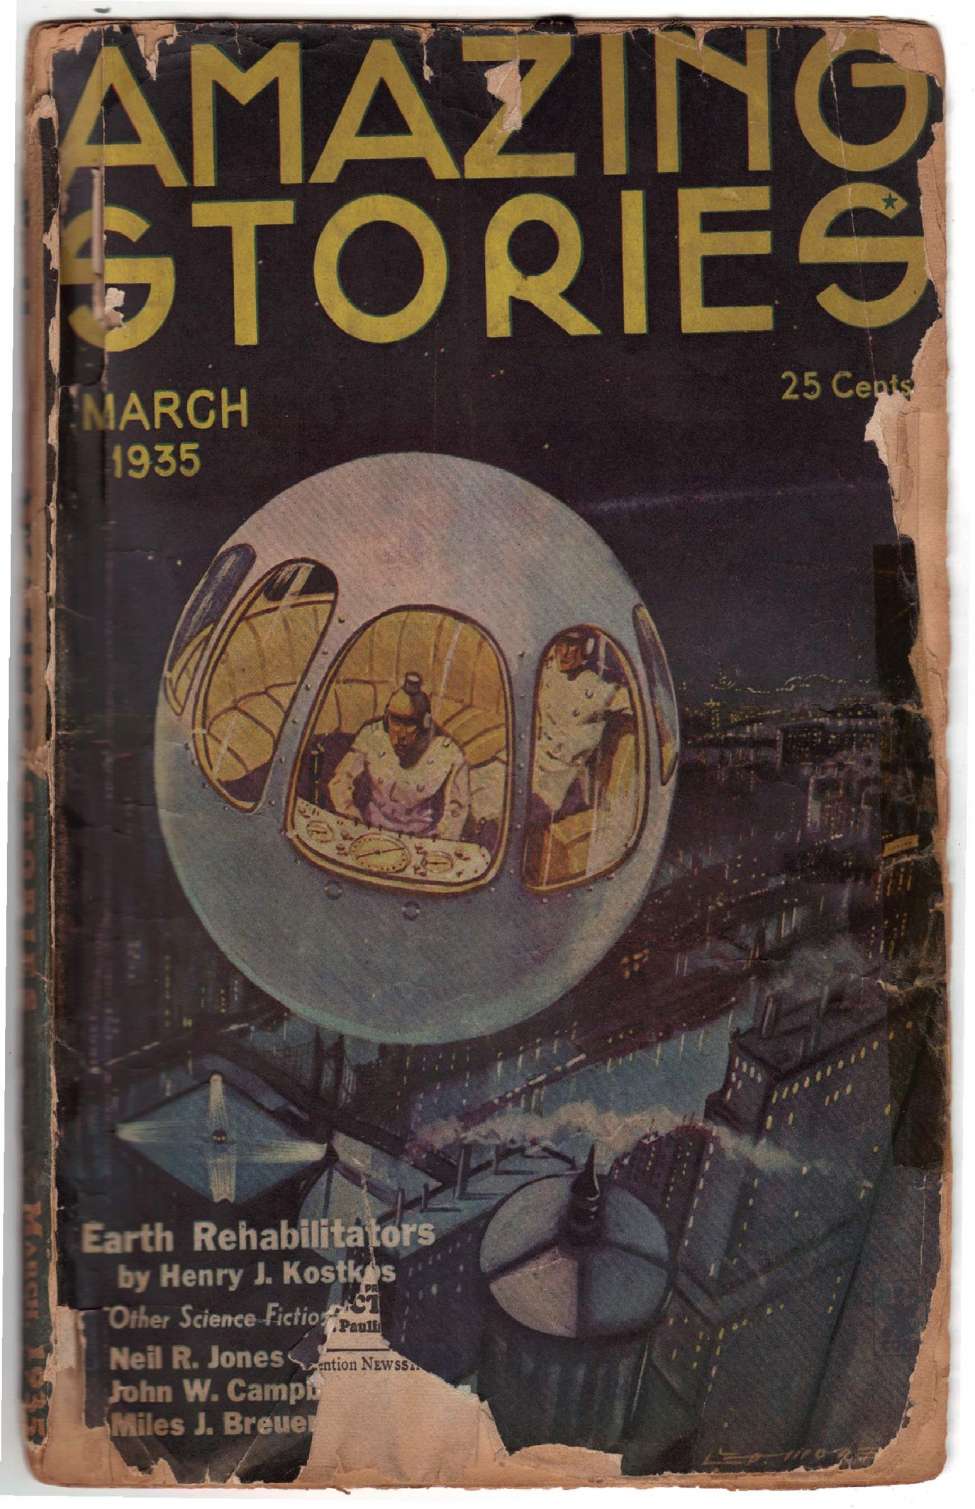 Book Cover For Amazing Stories v9 11 - Earth Rehabilitators - Henry J. Kostkos